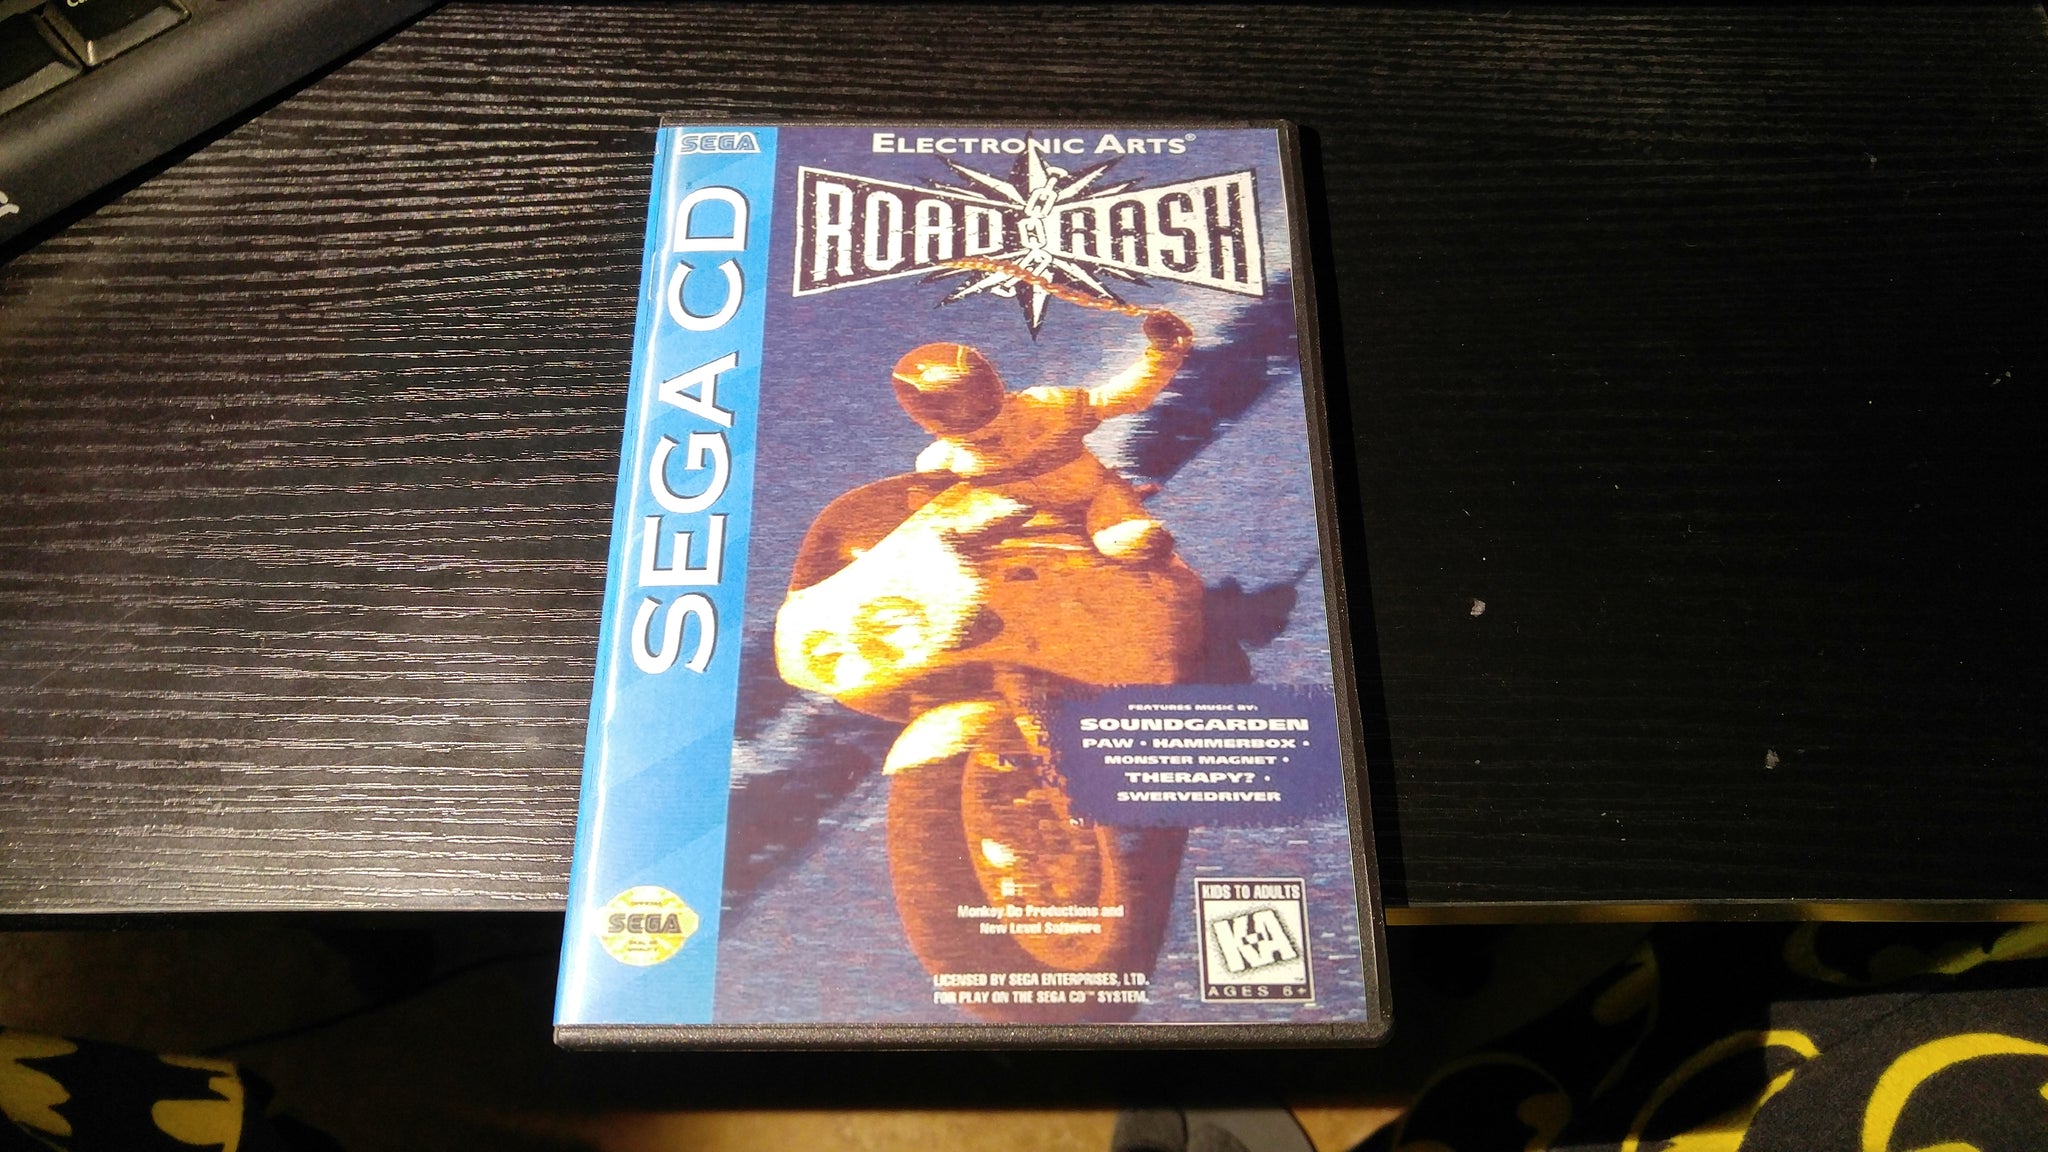 Road Rash Sega CD reproduction